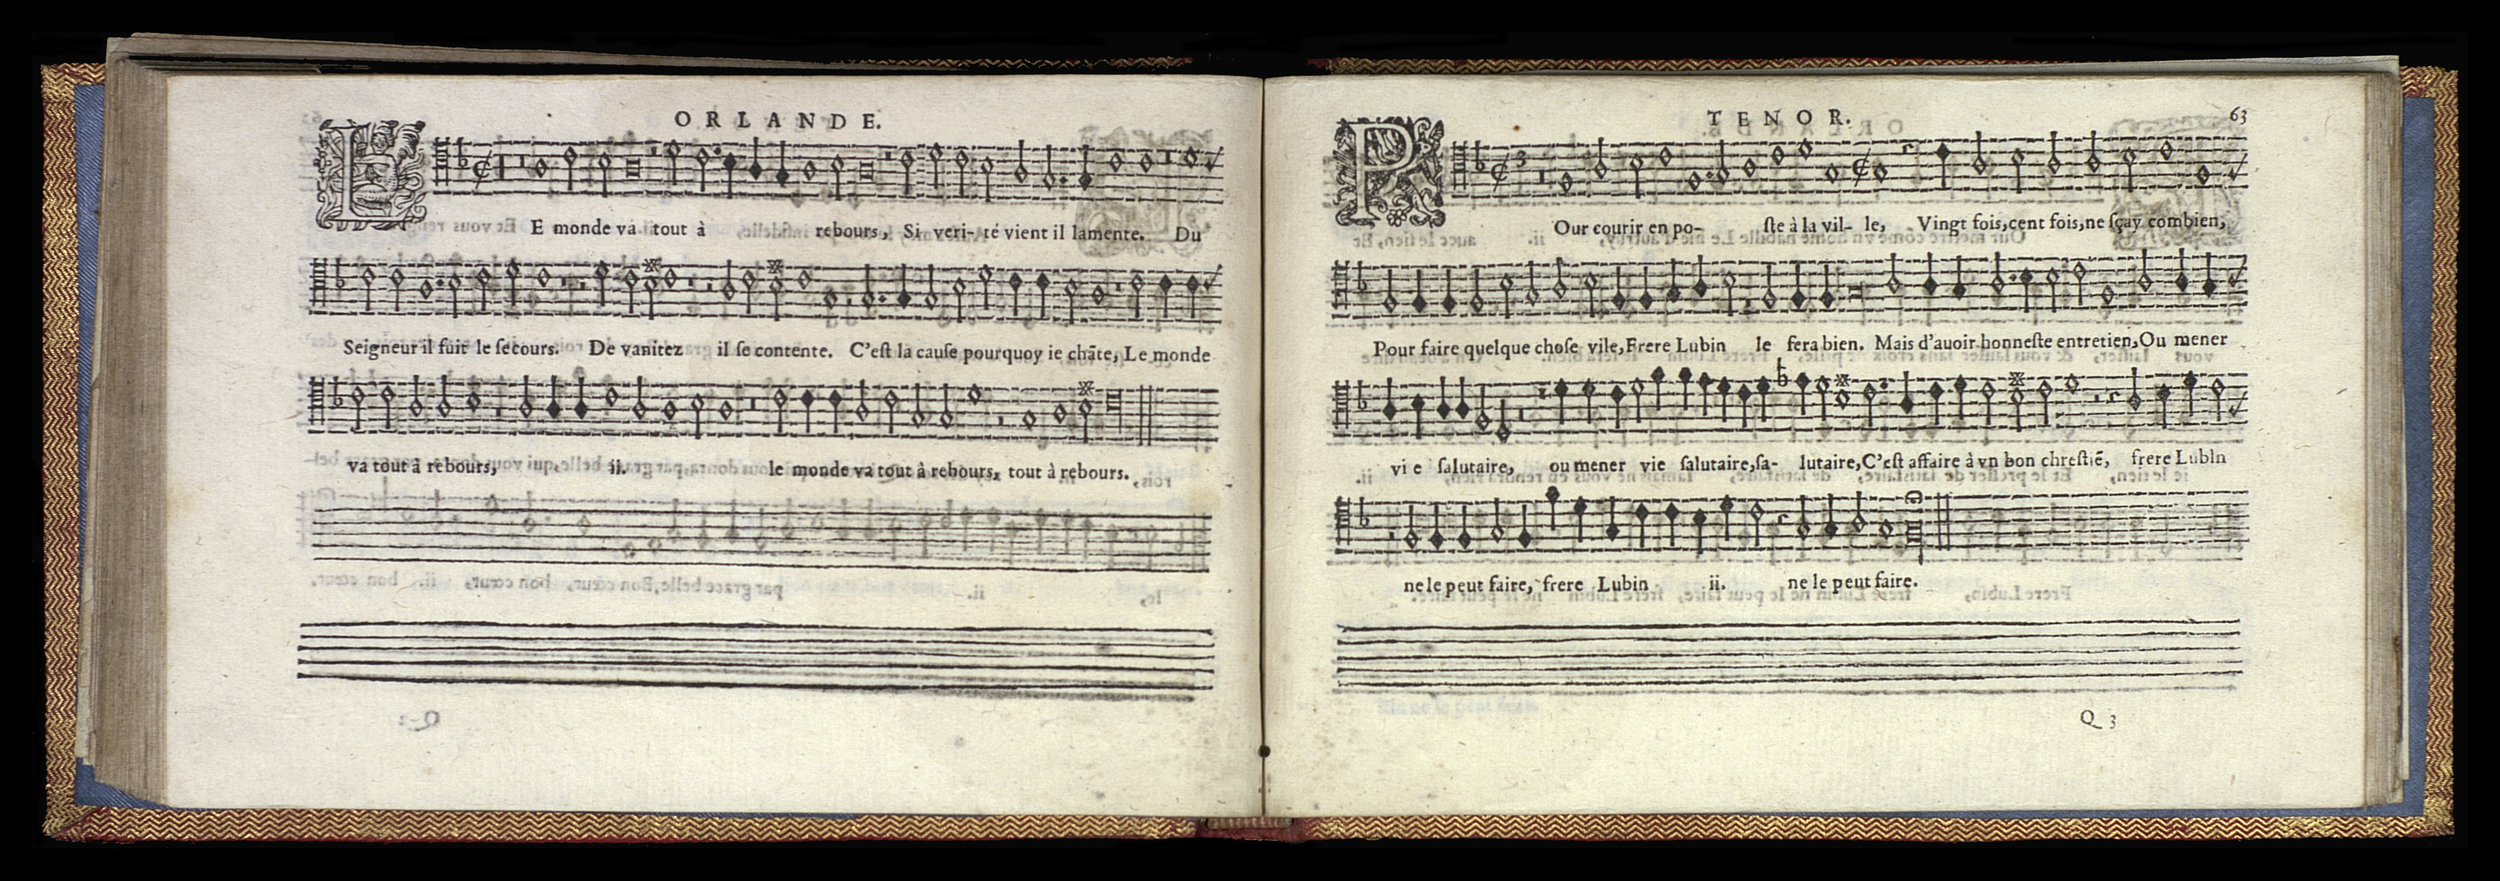 1582 Trésor de musique s.n._Mons_Page_072.jpg